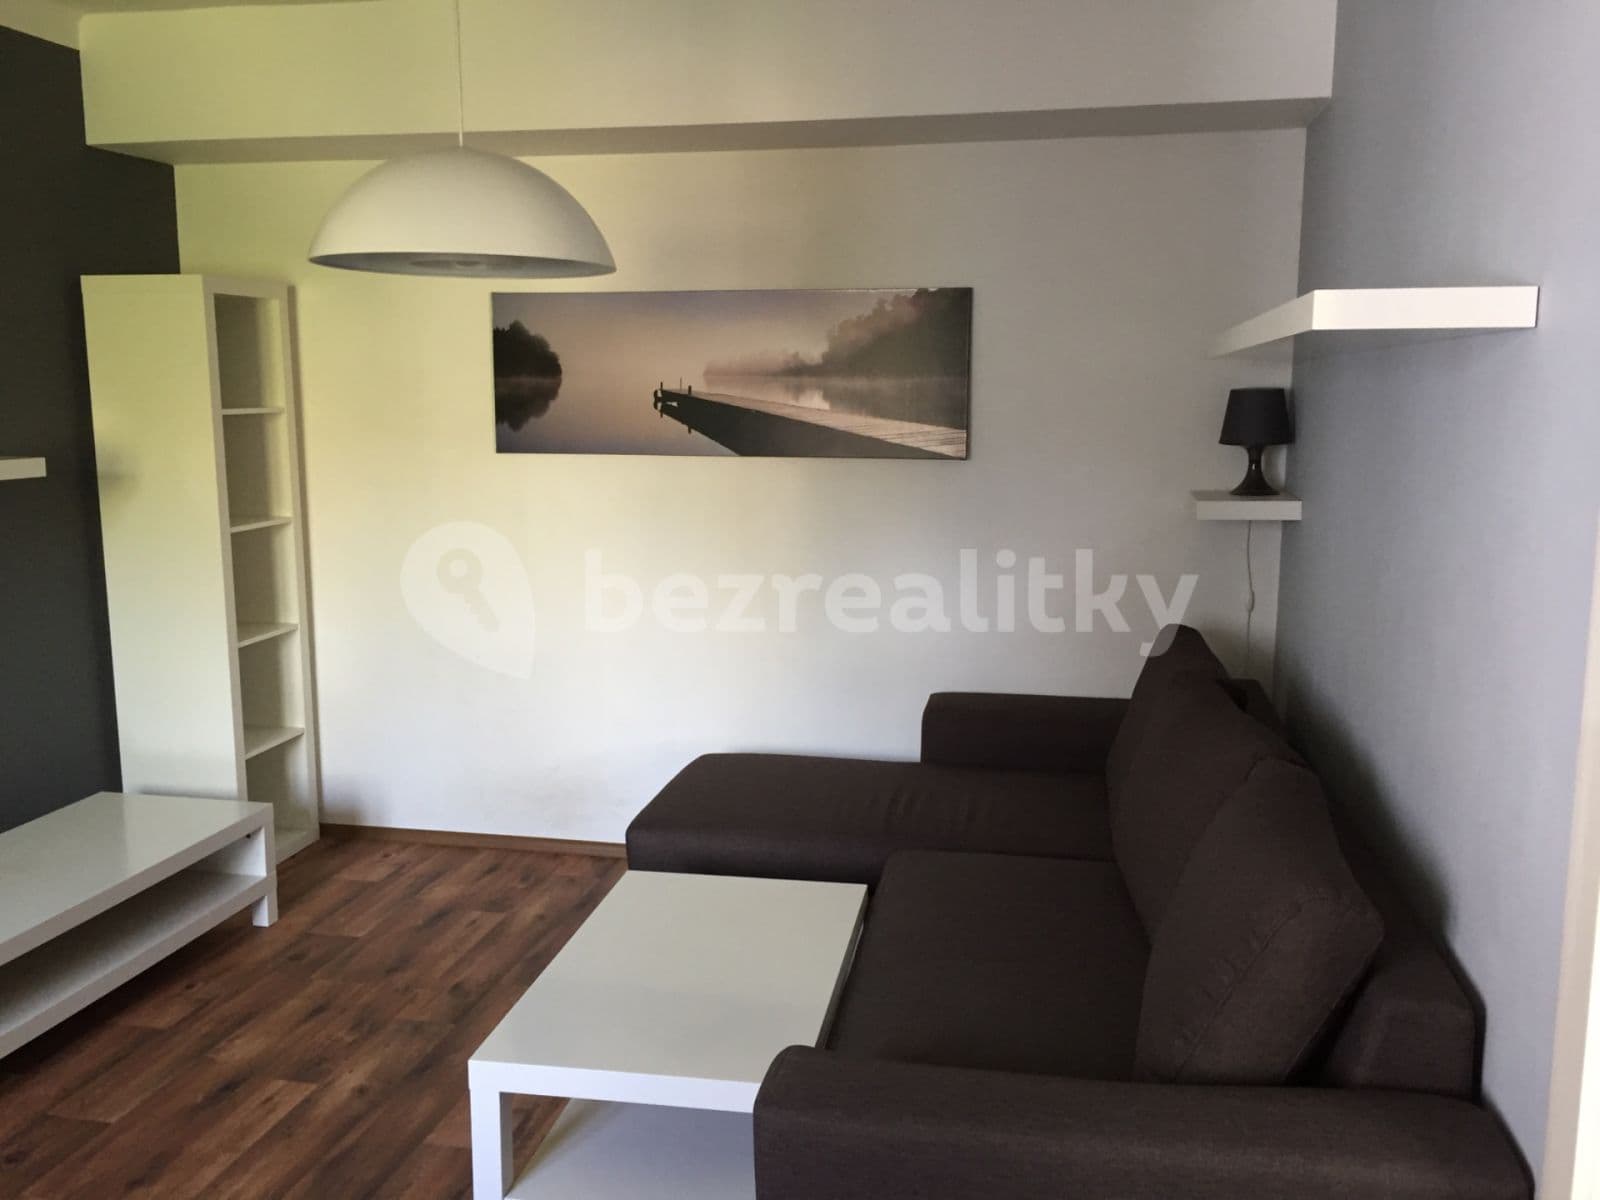 1 bedroom with open-plan kitchen flat to rent, 54 m², Klíšská, Ústí nad Labem, Ústecký Region